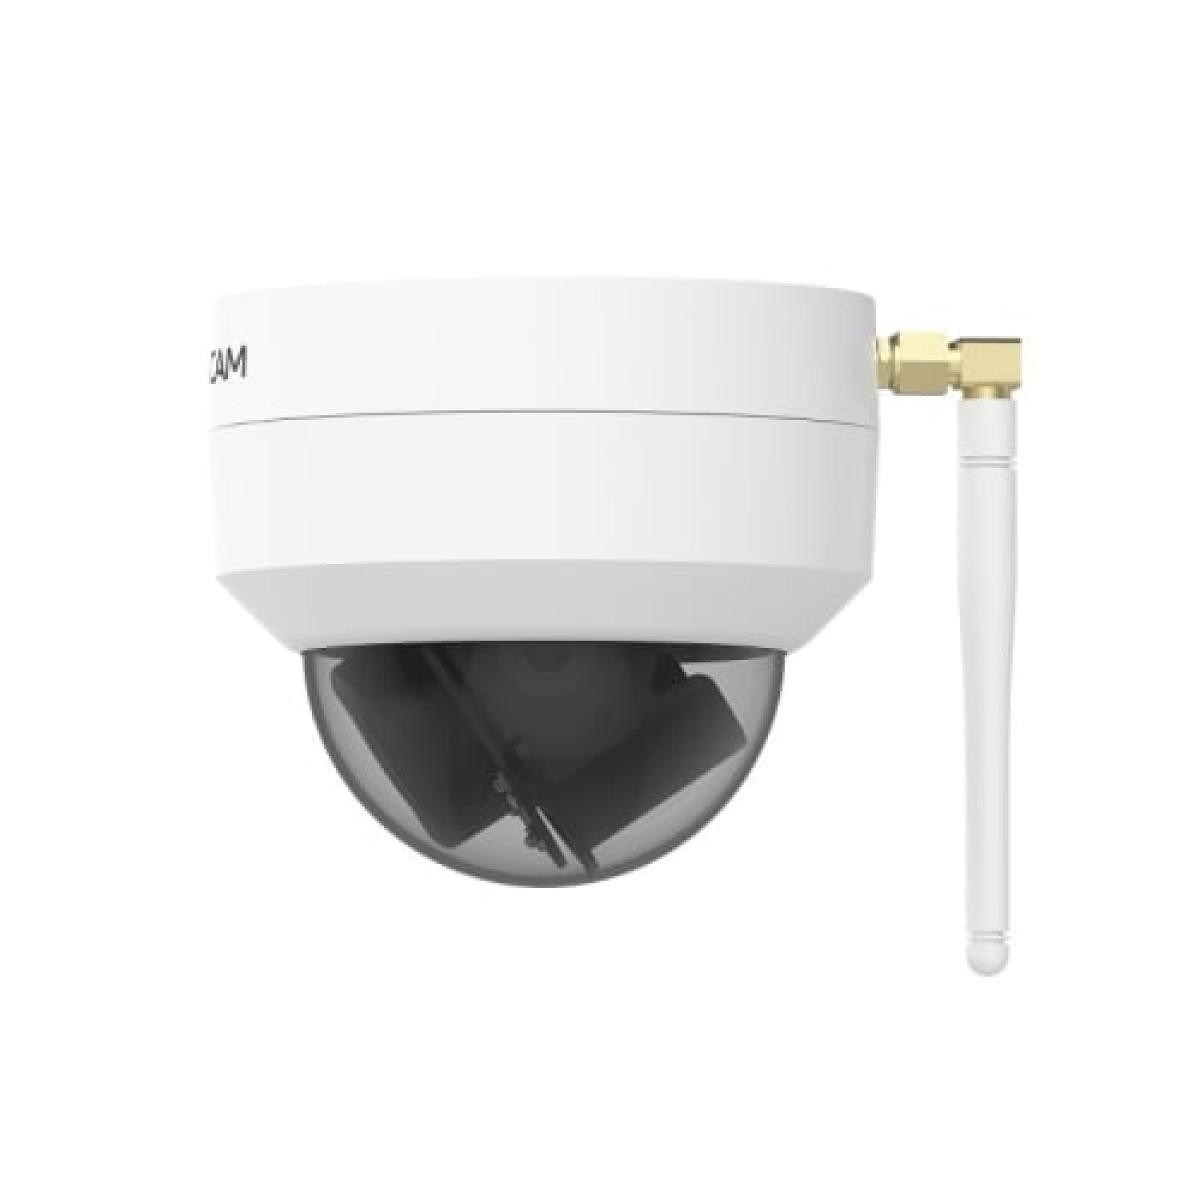 Caméra de surveillance connectée Foscam D4Z Caméra de Sécurité IP Extérieur Vision Nocturne 4 Mpx Zoom x4 Alarme Wi-Fi avec Alexa Blanc